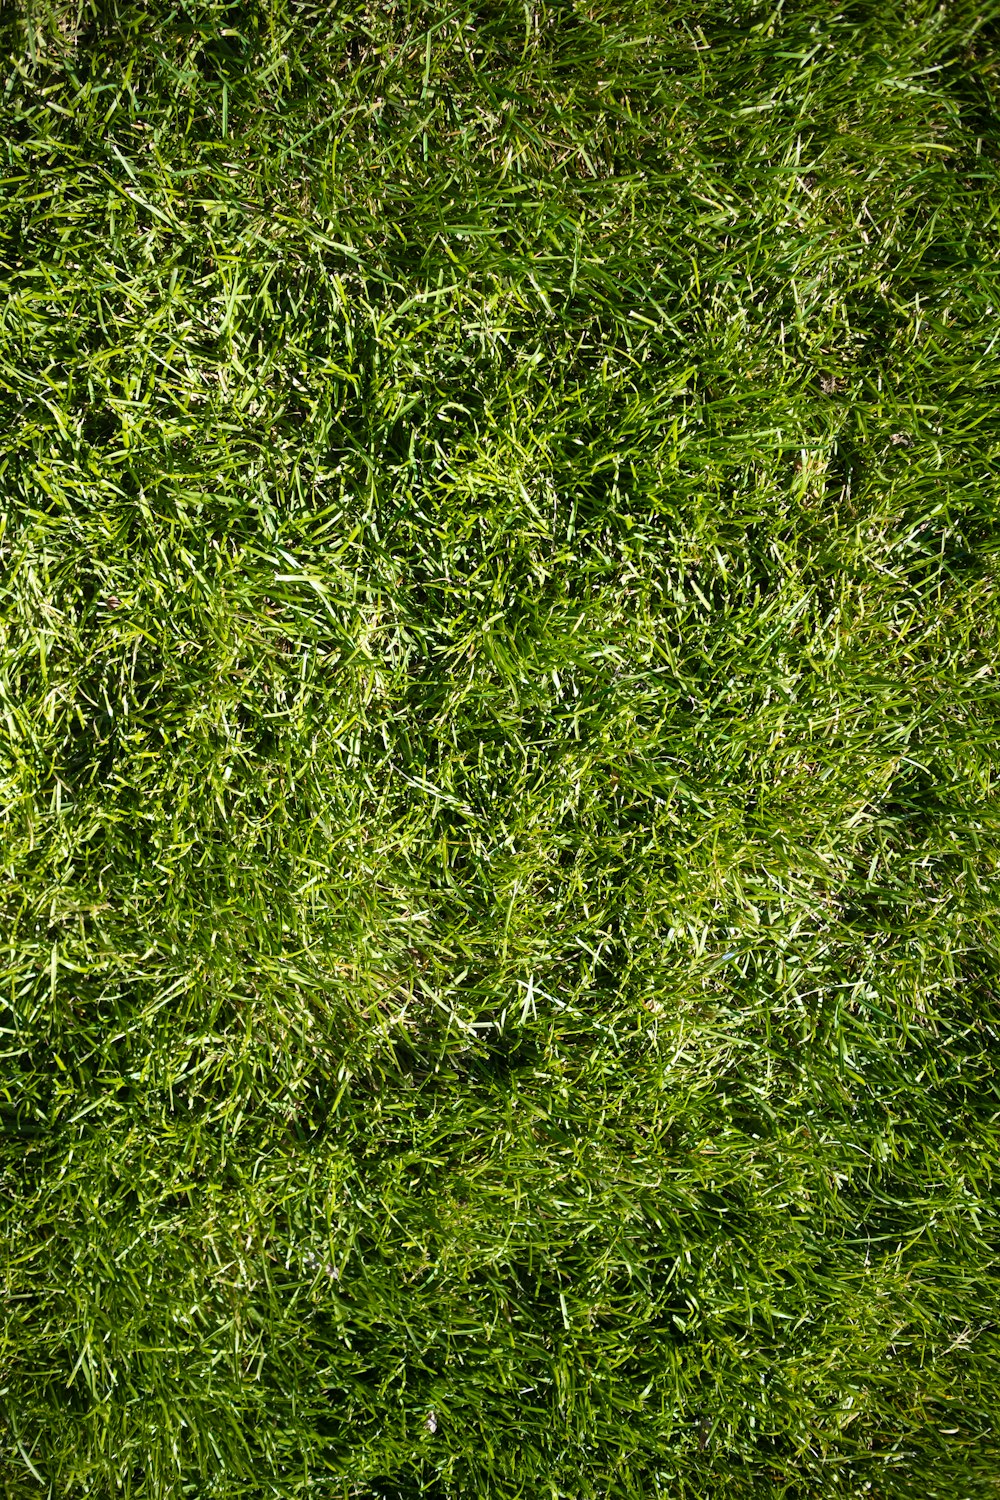 a close up of a green grass field